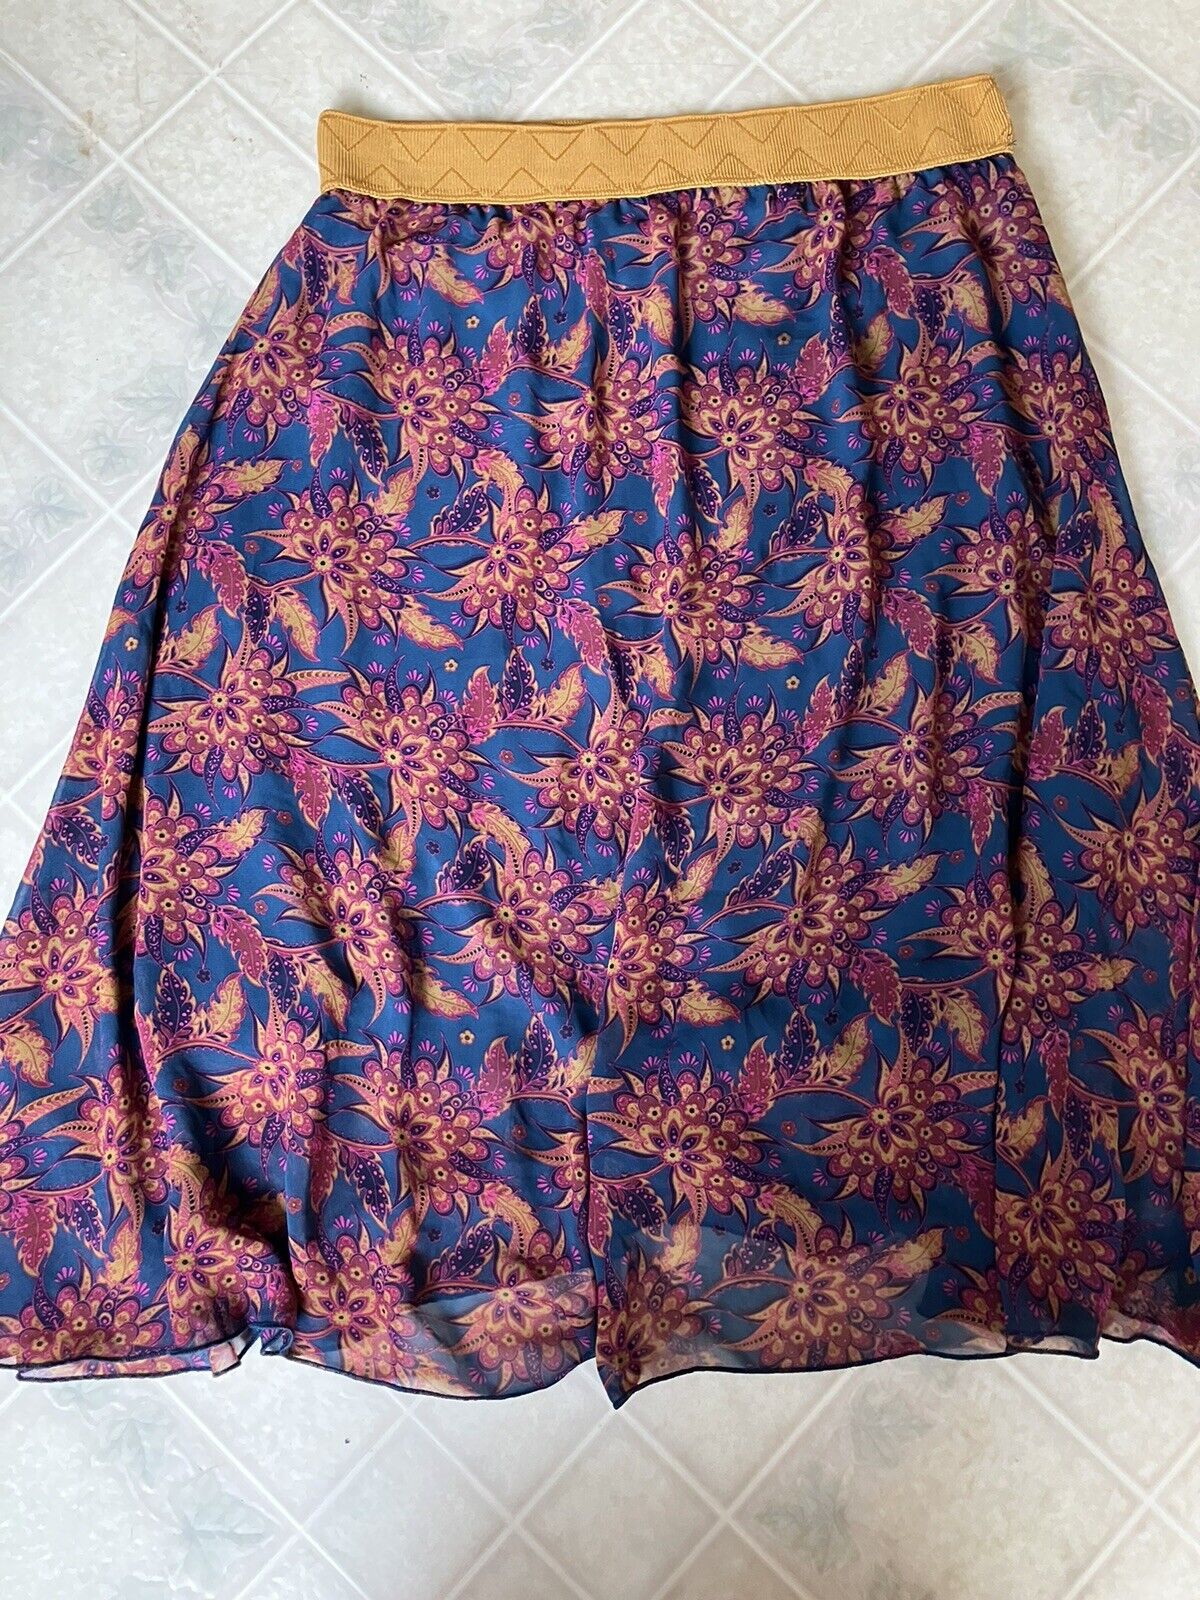 LulaRoe Skirt Large Gold pink blue Floral Lined C… - image 1